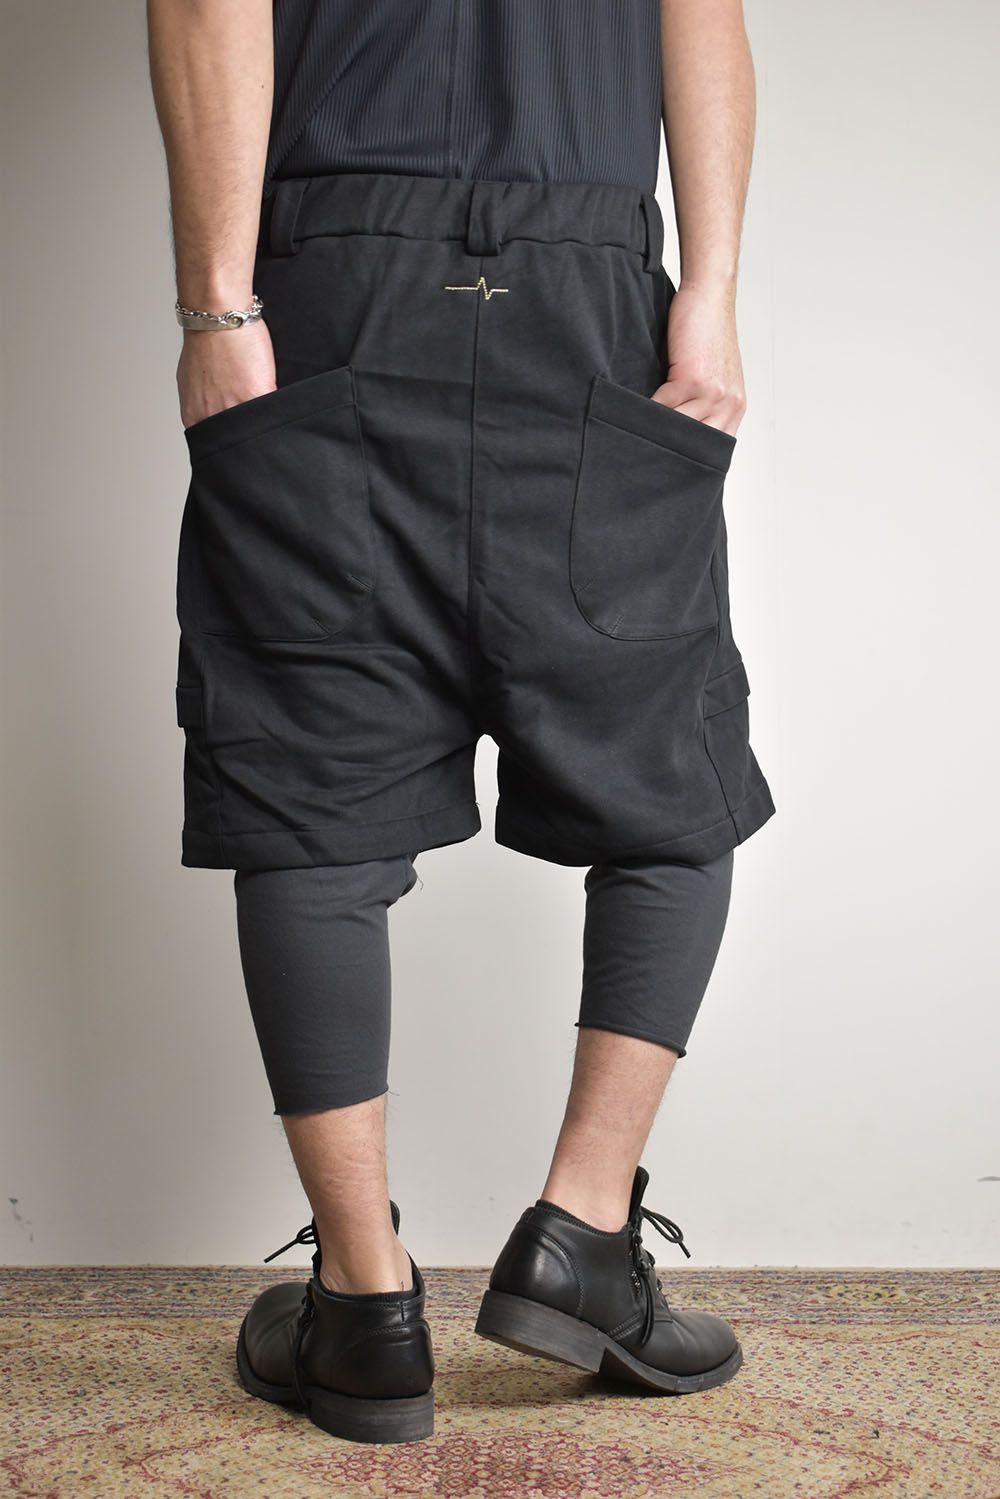 Layered Shorts"Black"/レイヤードショーツ"ブラック"